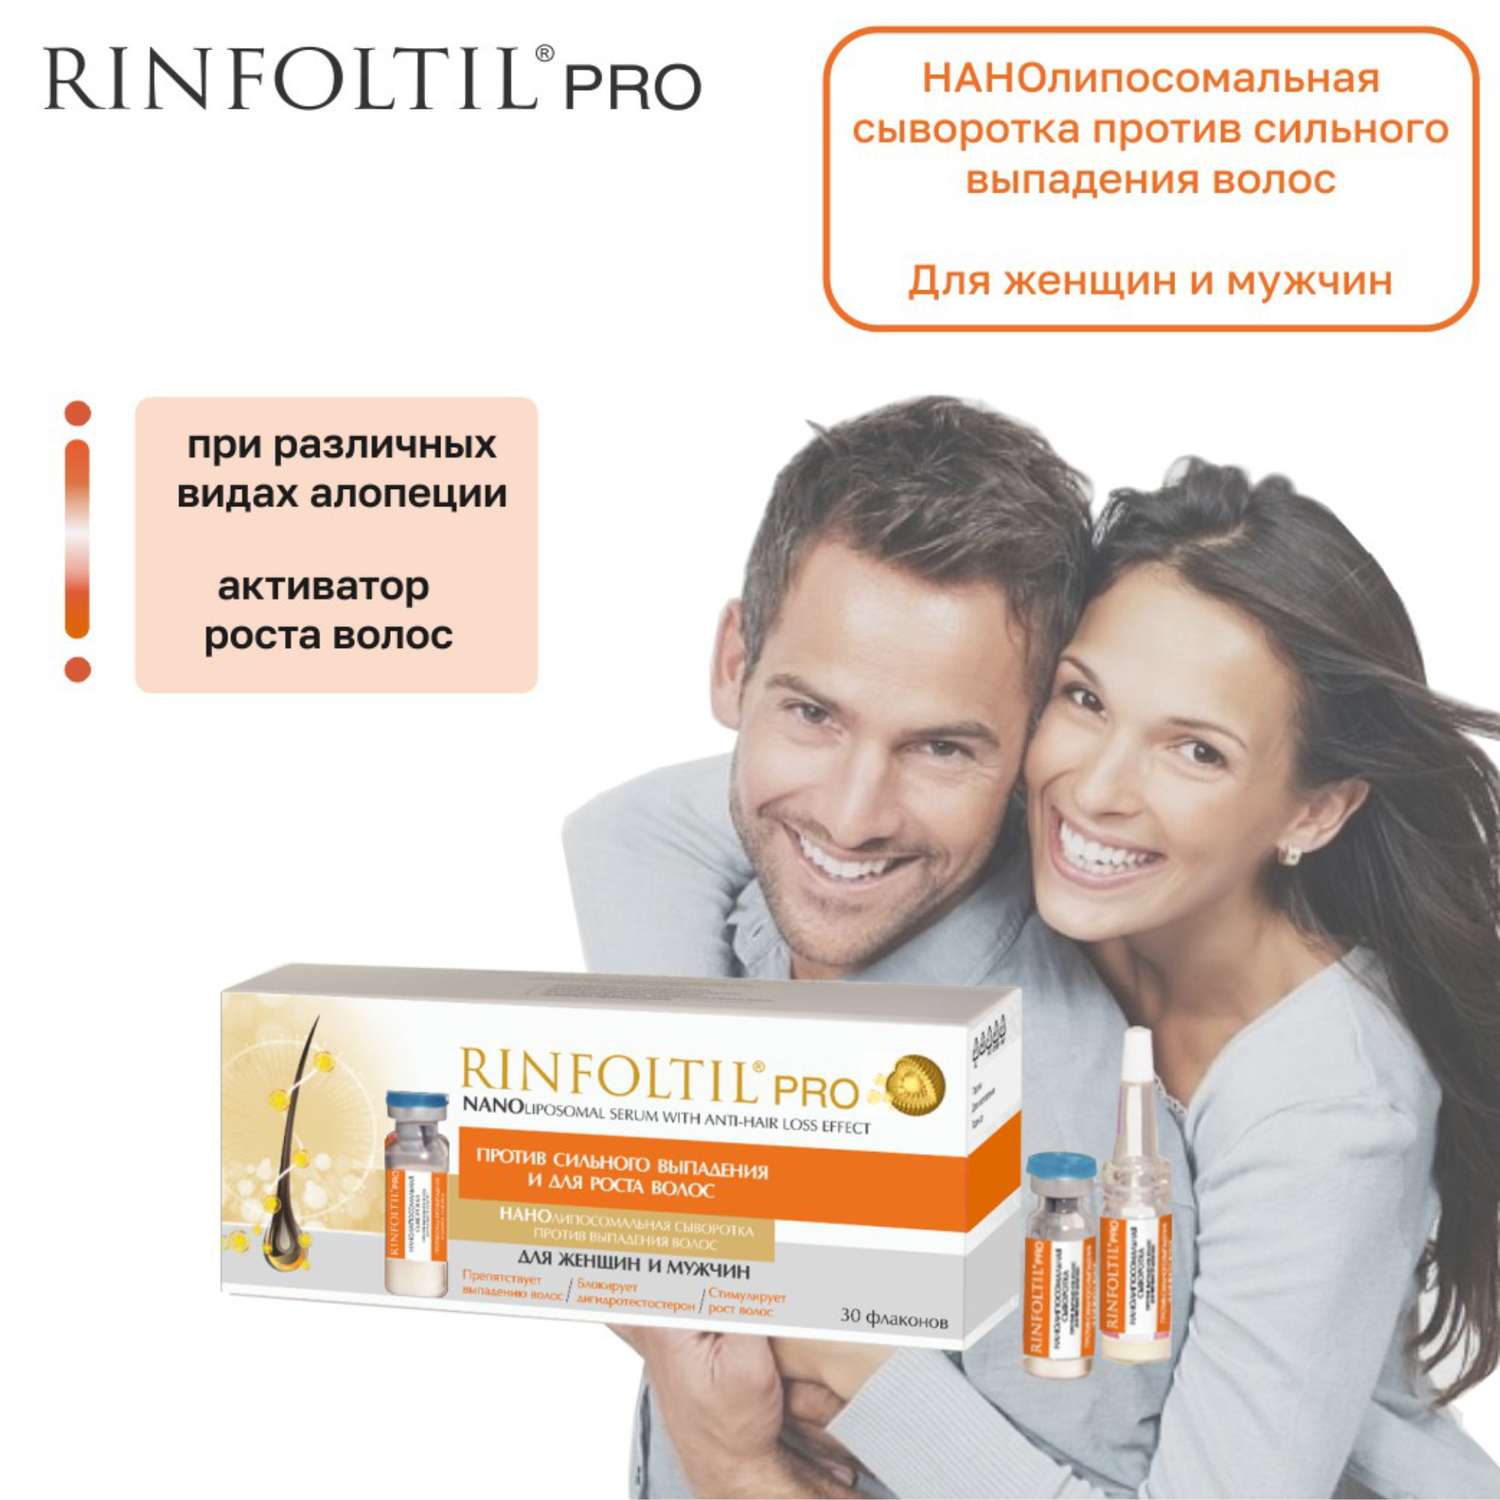 Сыворотка Rinfoltil PRO Нанолипосомальная против выпадения волос для женщин и мужчин - фото 3